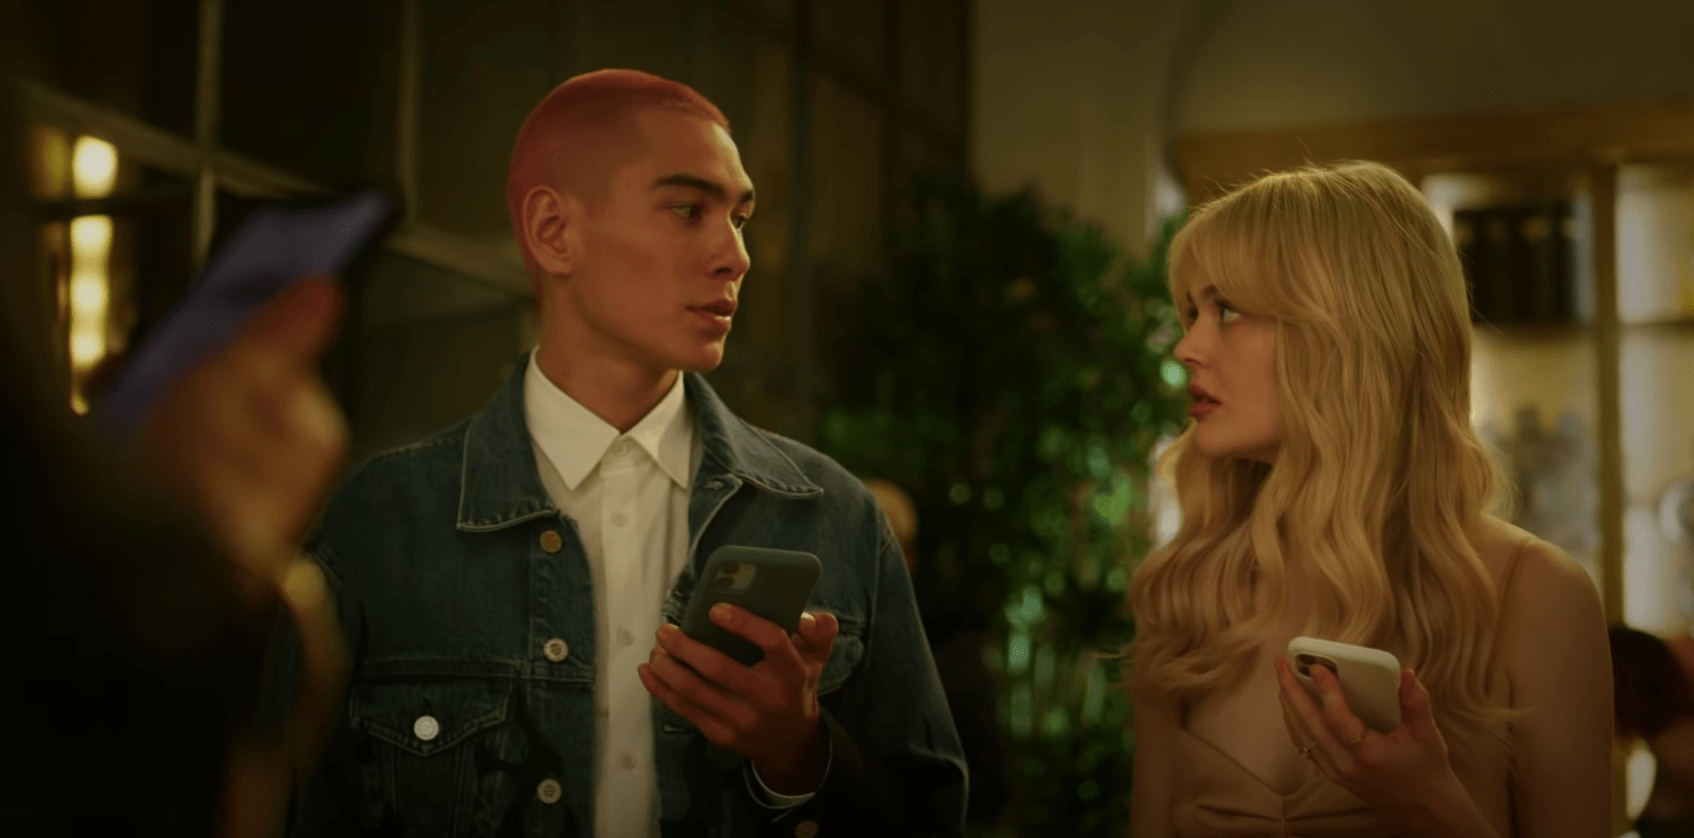 WATCH: 'Gossip Girl' reboot drops first teaser trailer